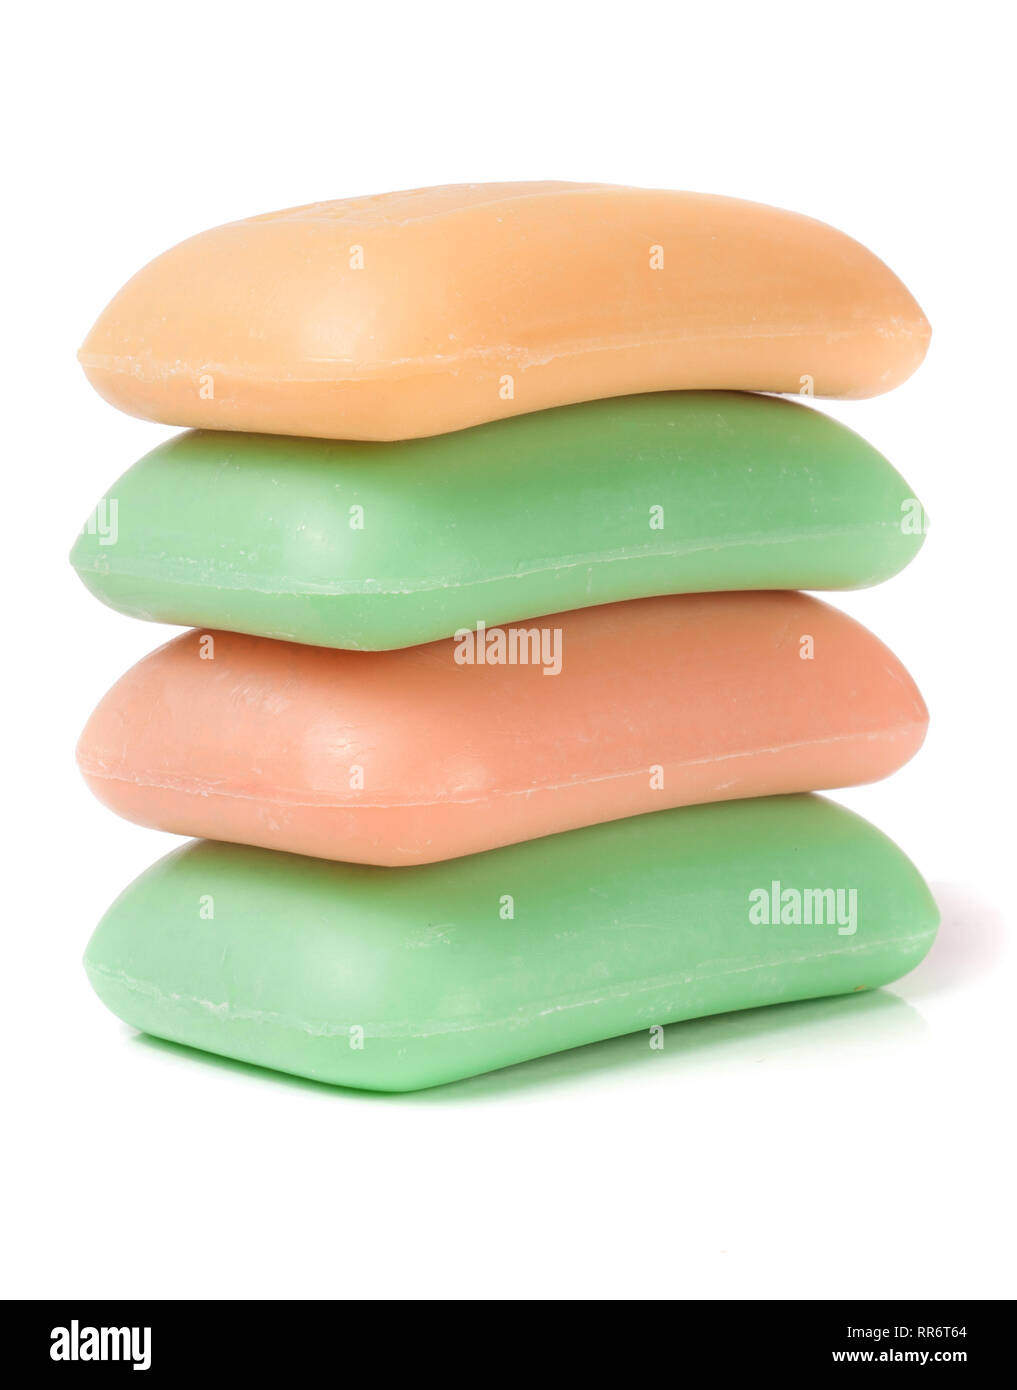 Stapel von Seife verschiedene Farben auf weißem Hintergrund Stockfoto